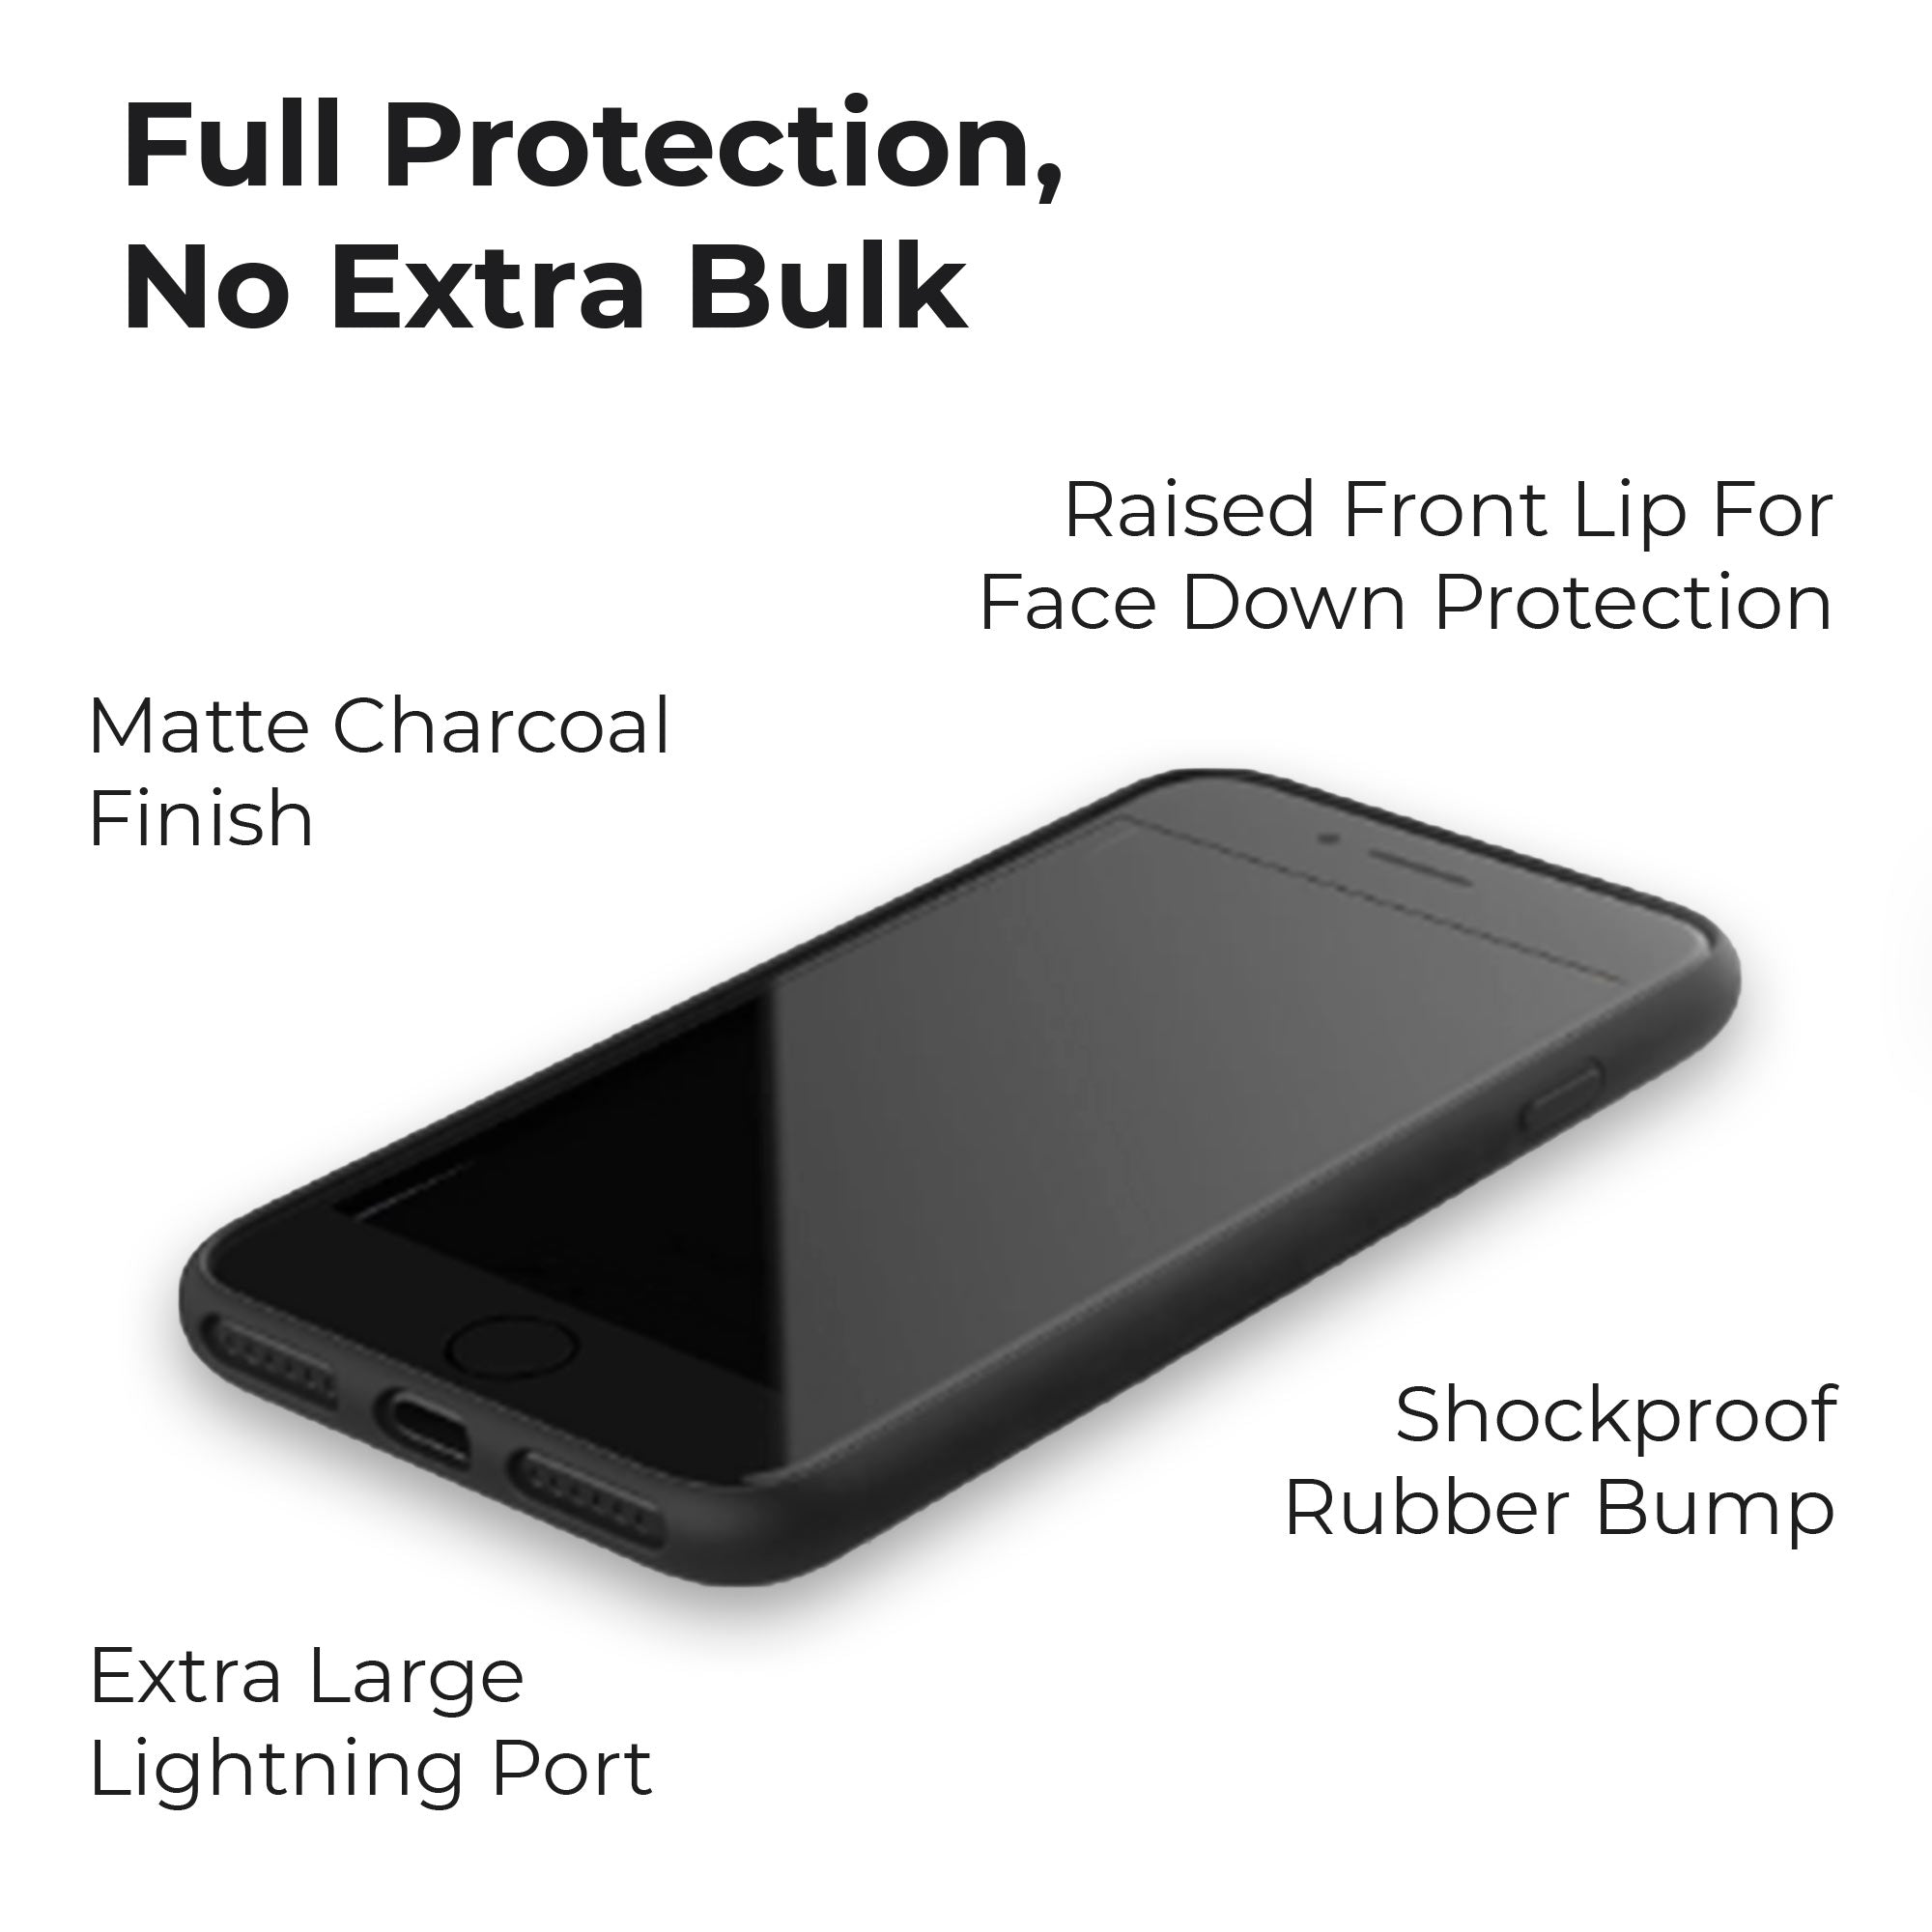 Protección total y carcasa duradera para teléfono.